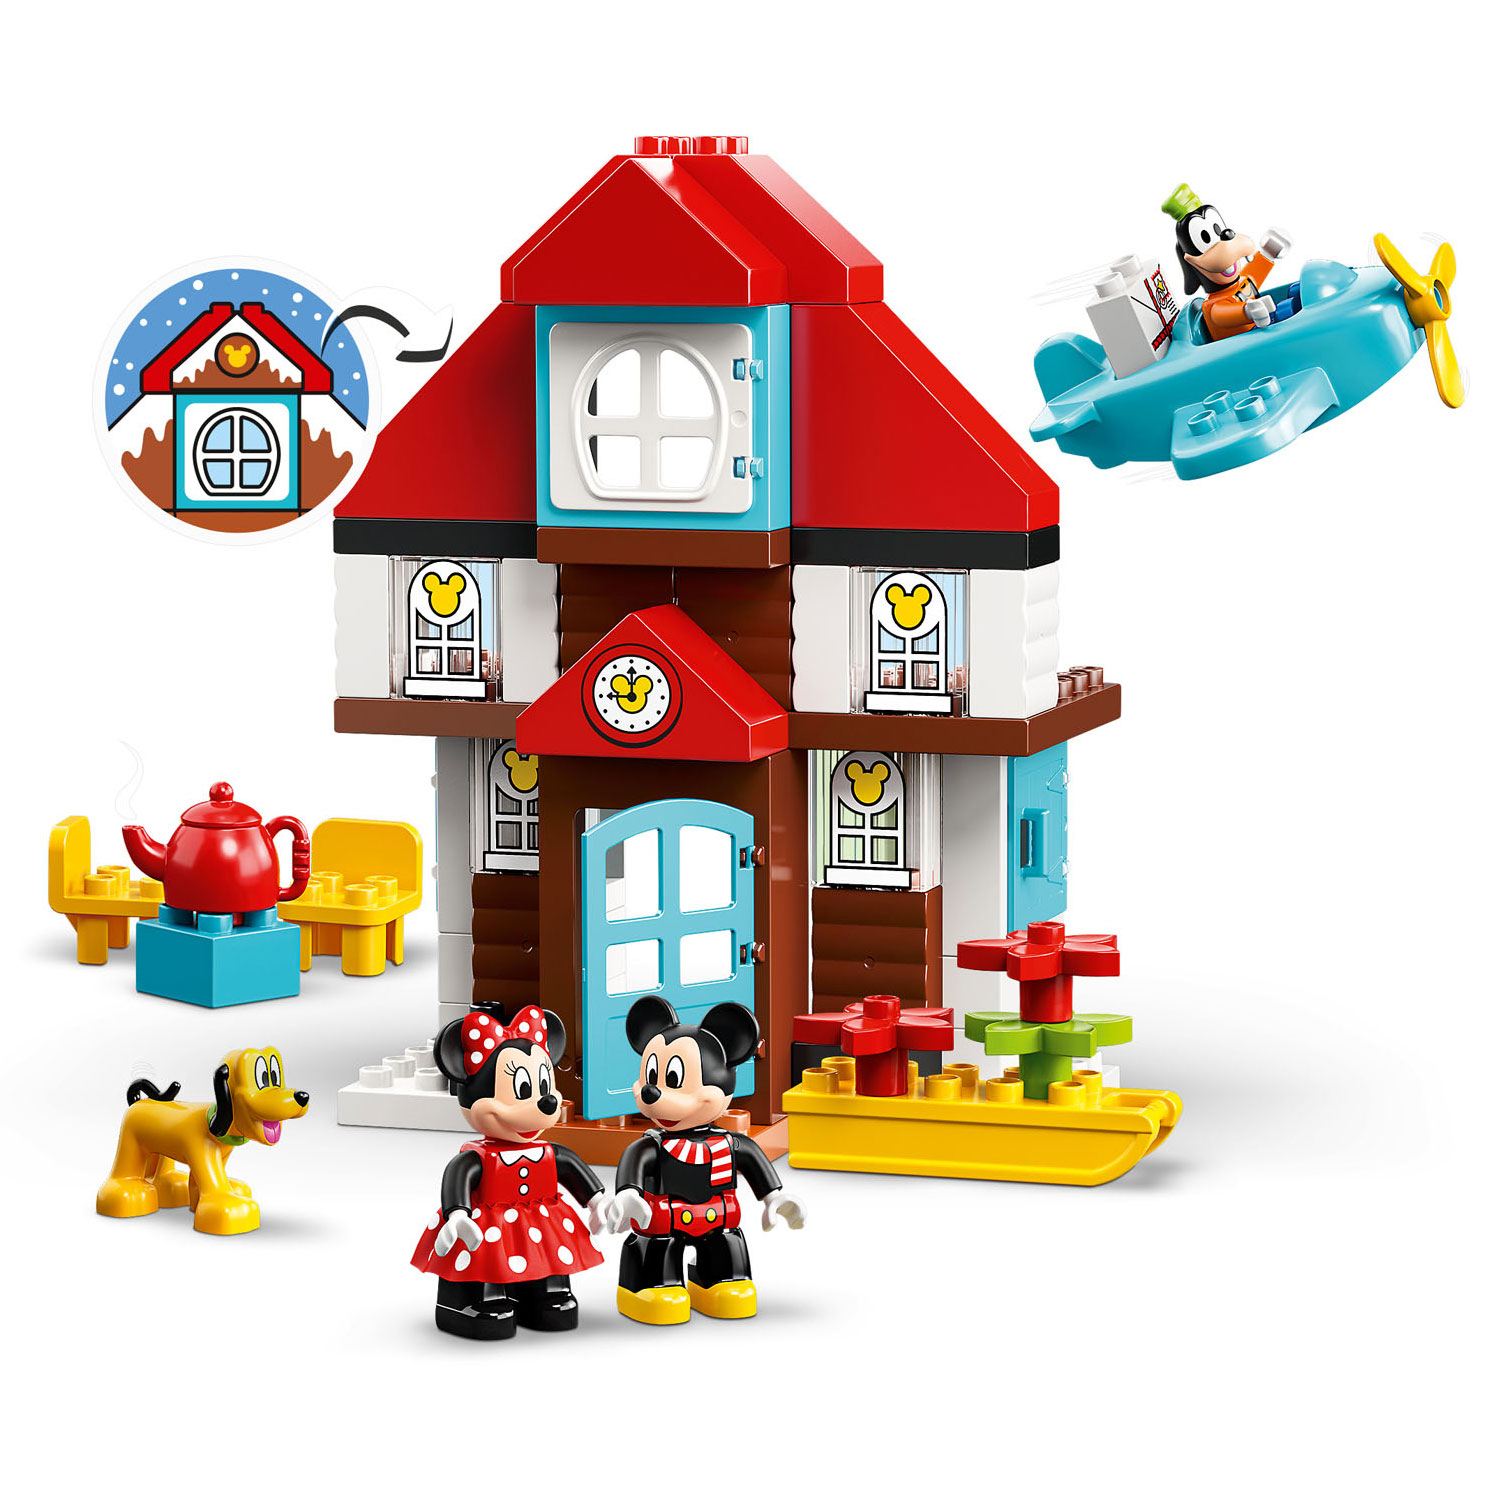 LEGO DUPLO 10889 Mickey's Vakantiehuisje